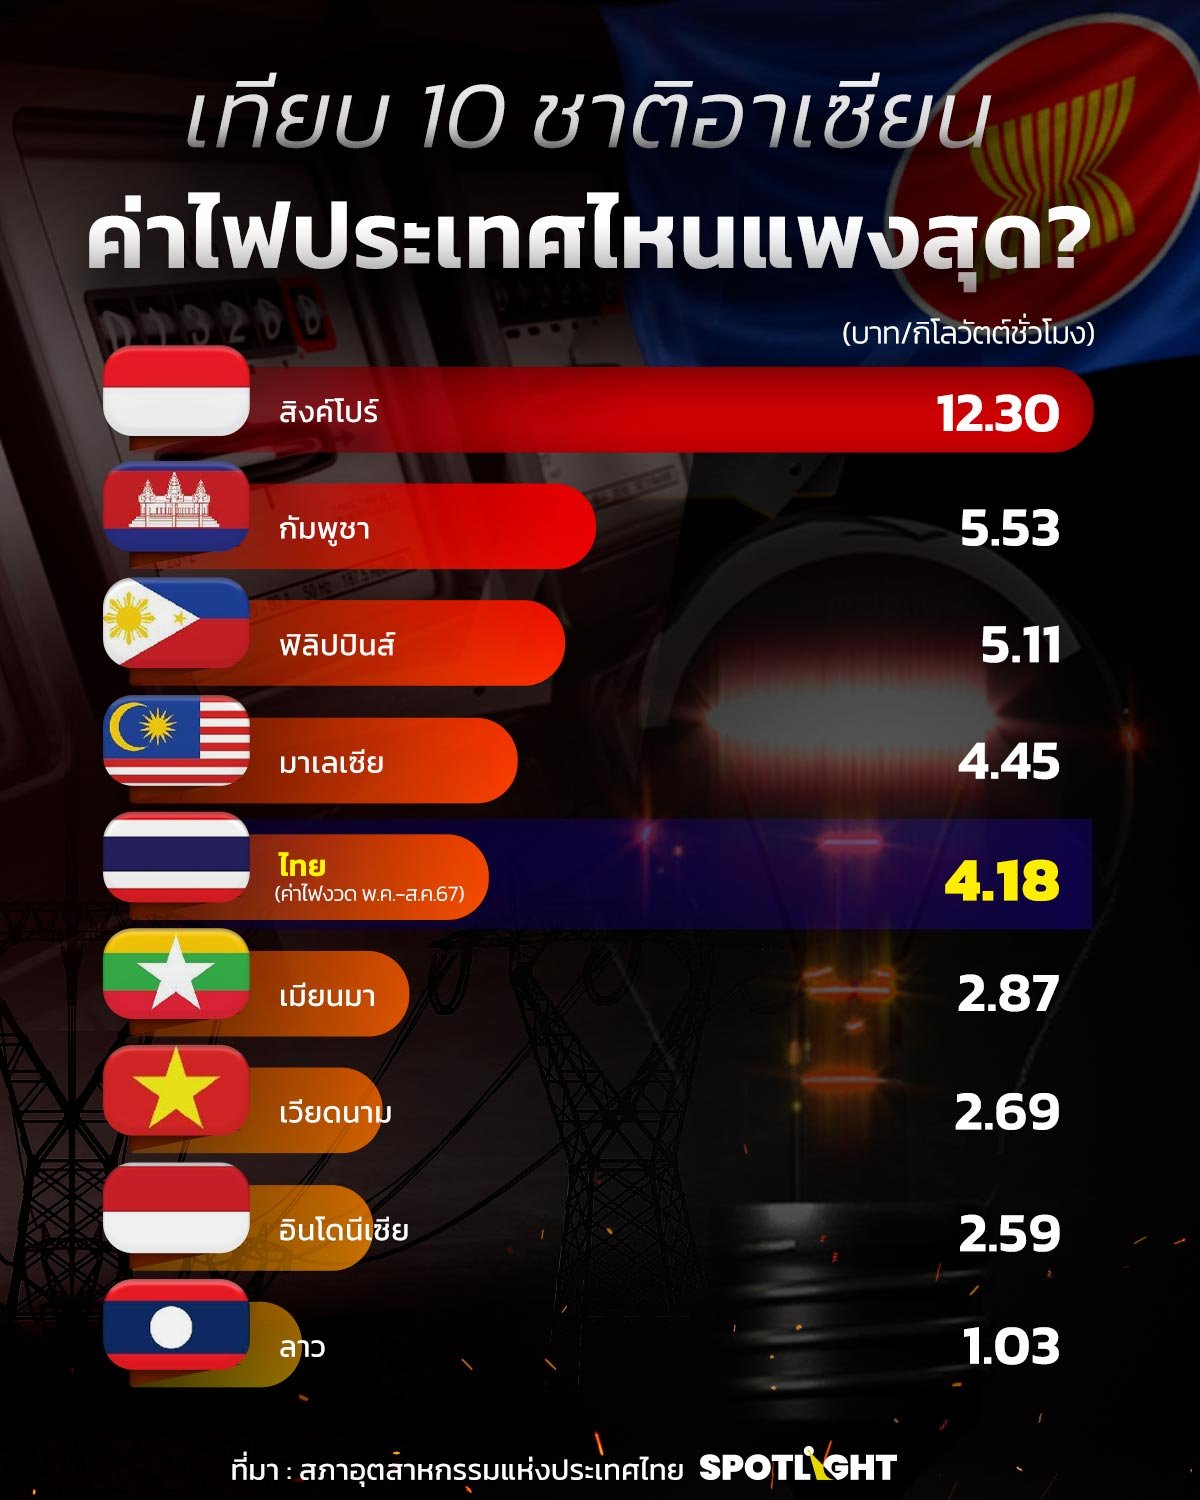 เทียบต้นทุนค่าไฟของไทยกับชาติอาเซียน ทำไมไทยแพงกว่าเพื่อนบ้าน?